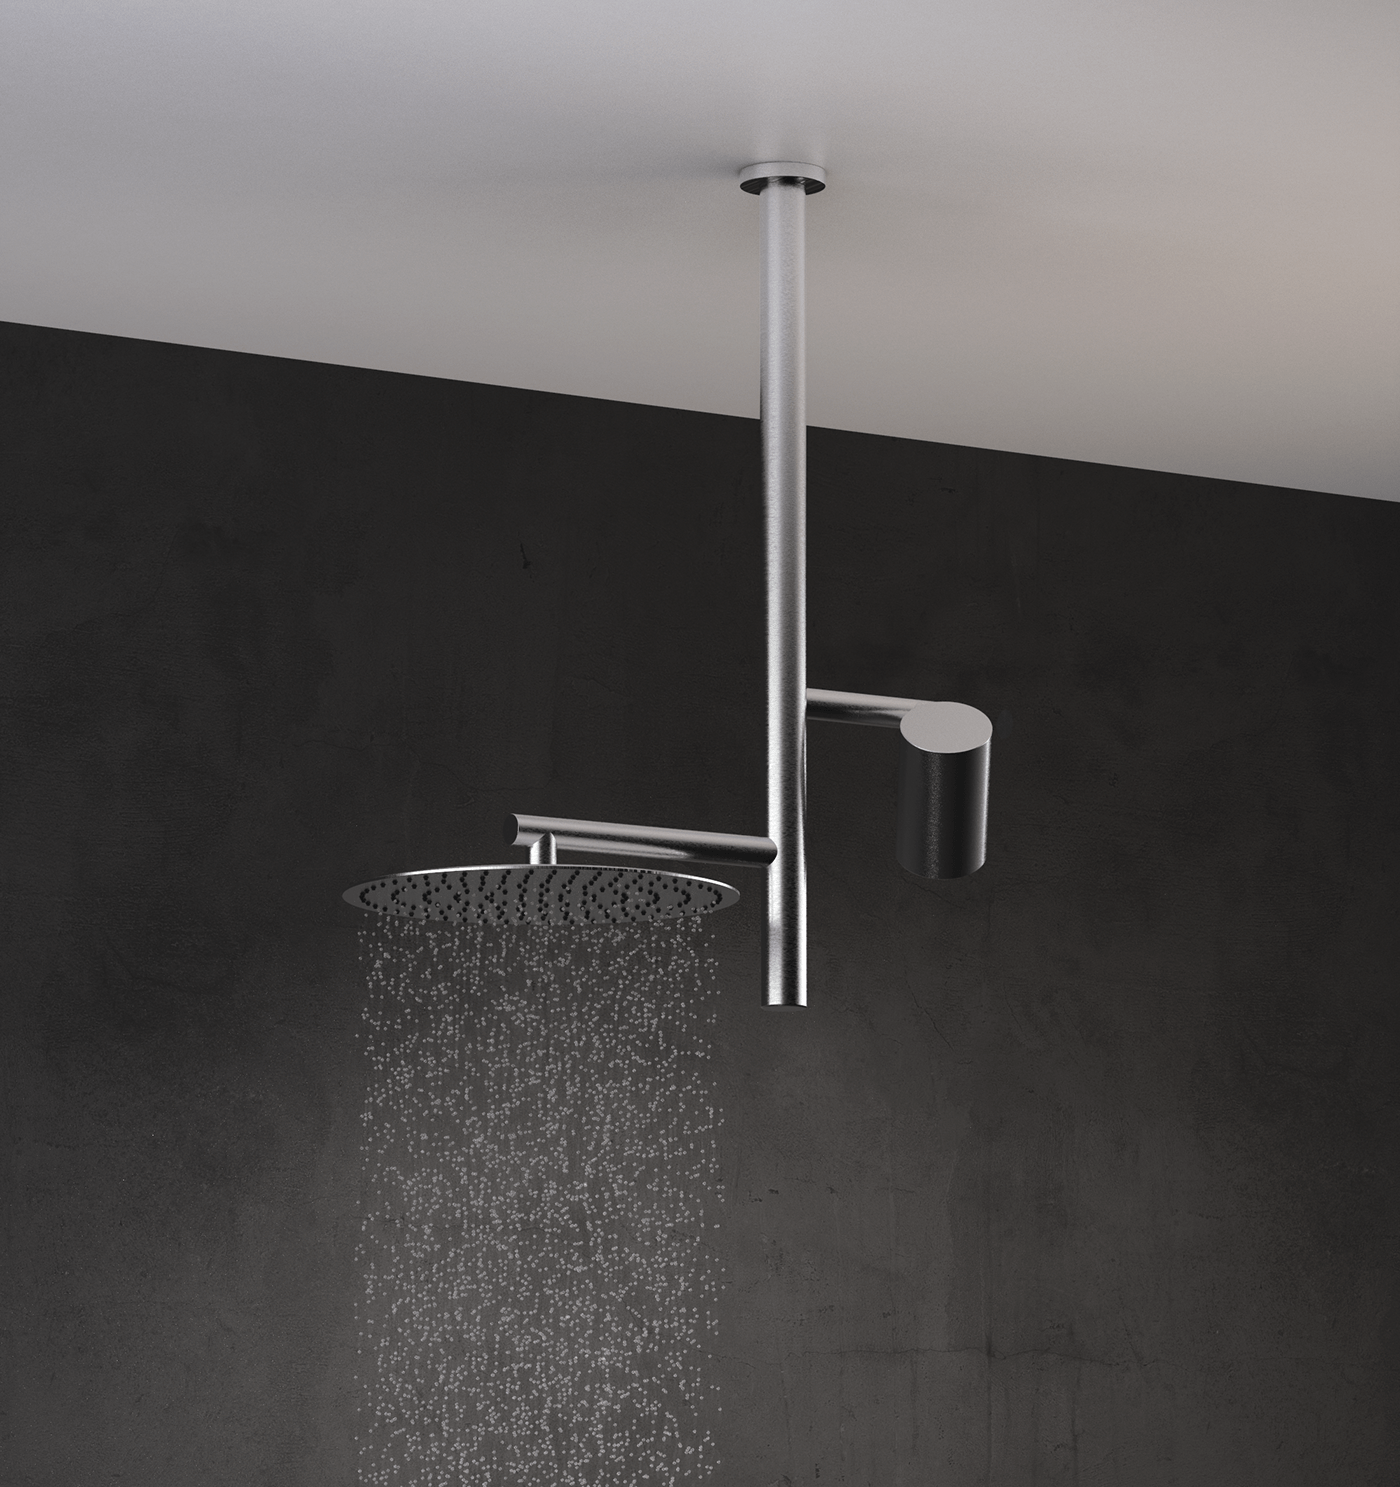 SHOWER Render shower system bathroom design industrial design  product design  keyshot architecture